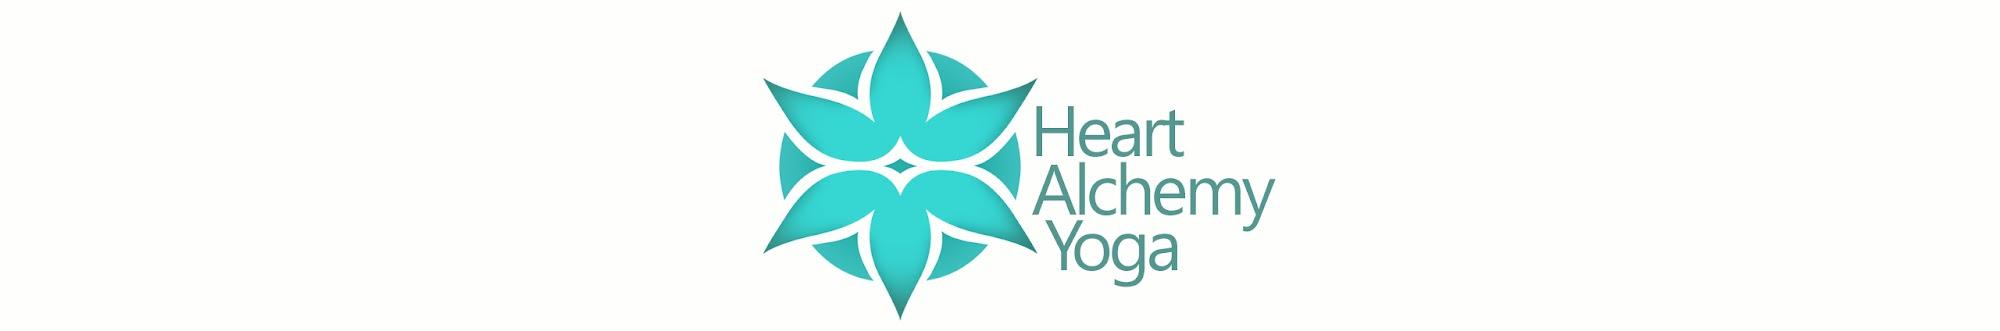 Heart Alchemy Yoga with Michelle Goldstein